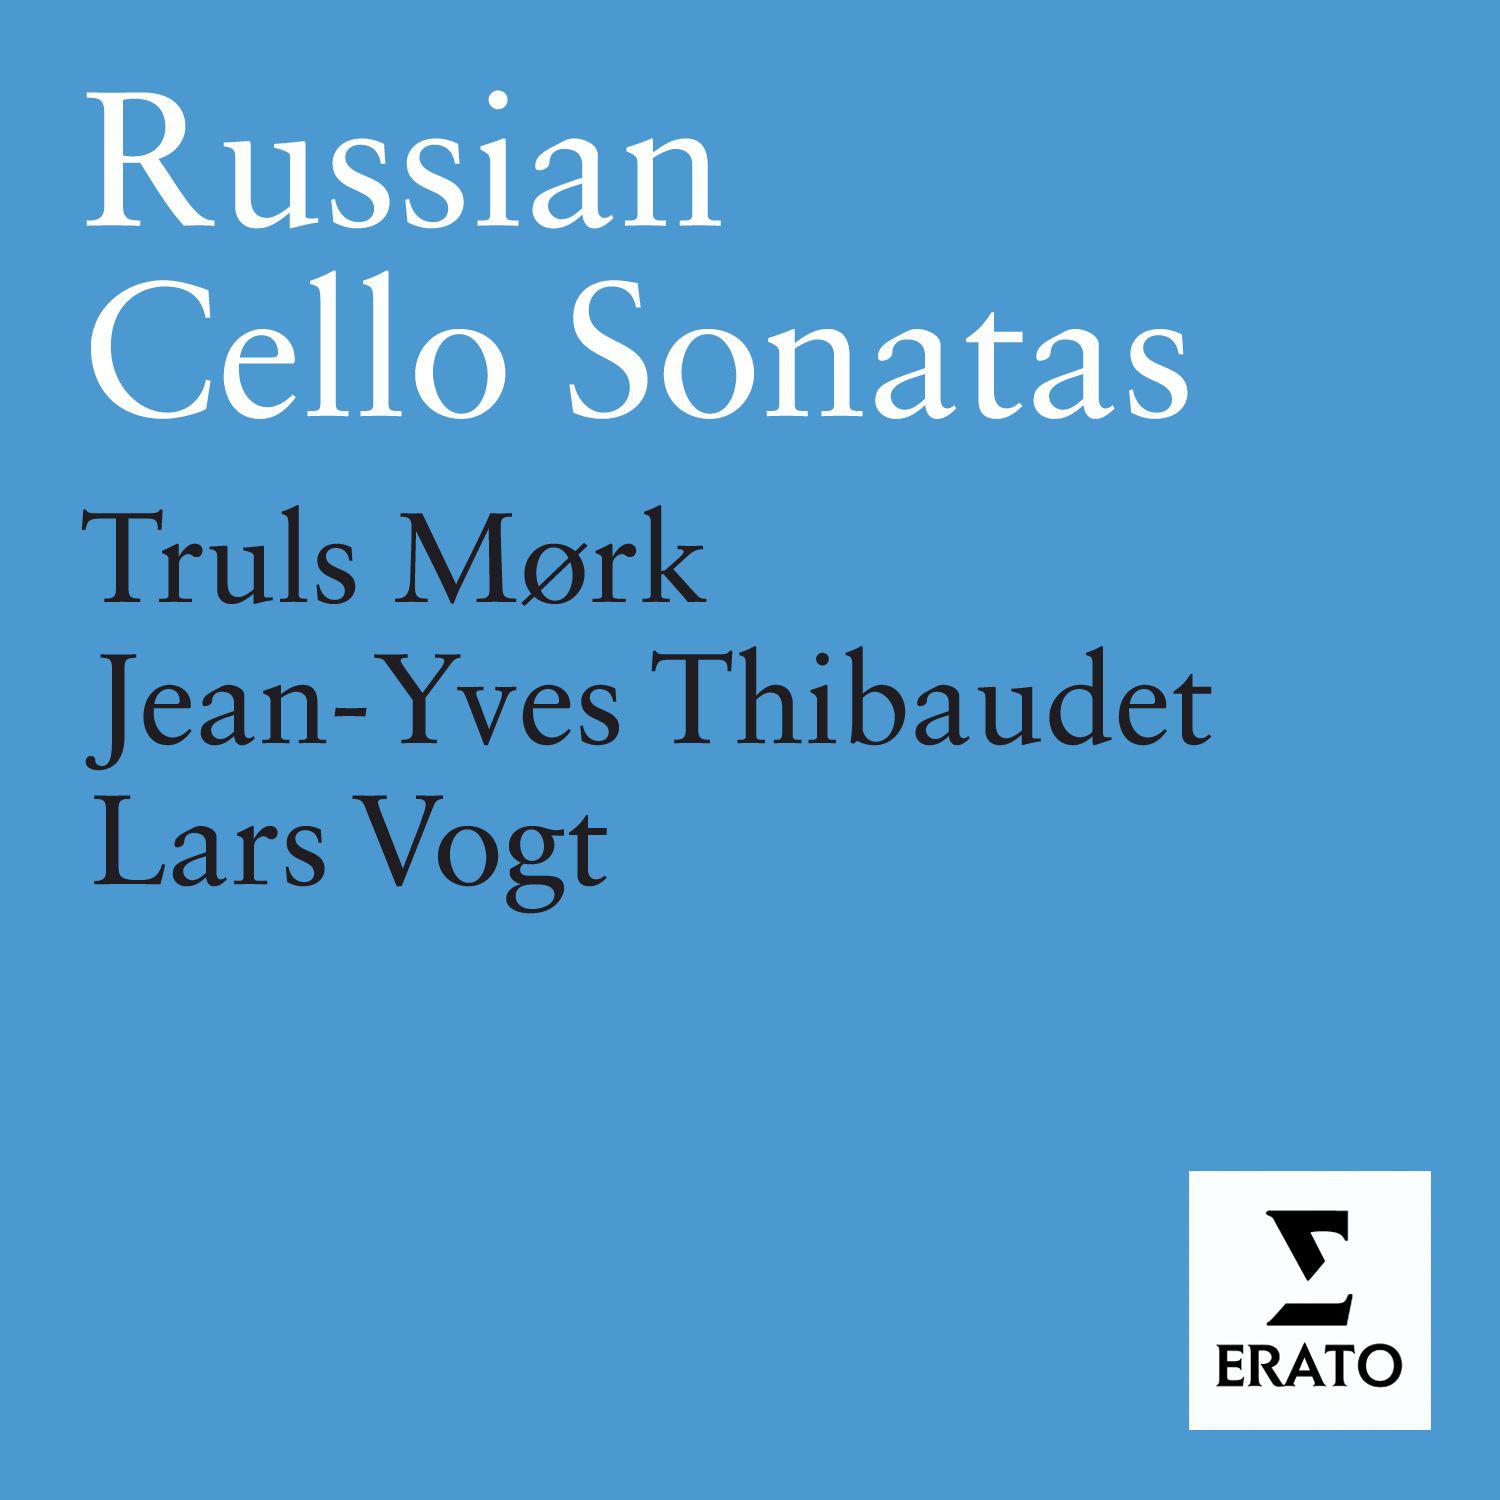 Sonata for Cello and Piano in G minor Op. 19: Lento - Allegro moderato